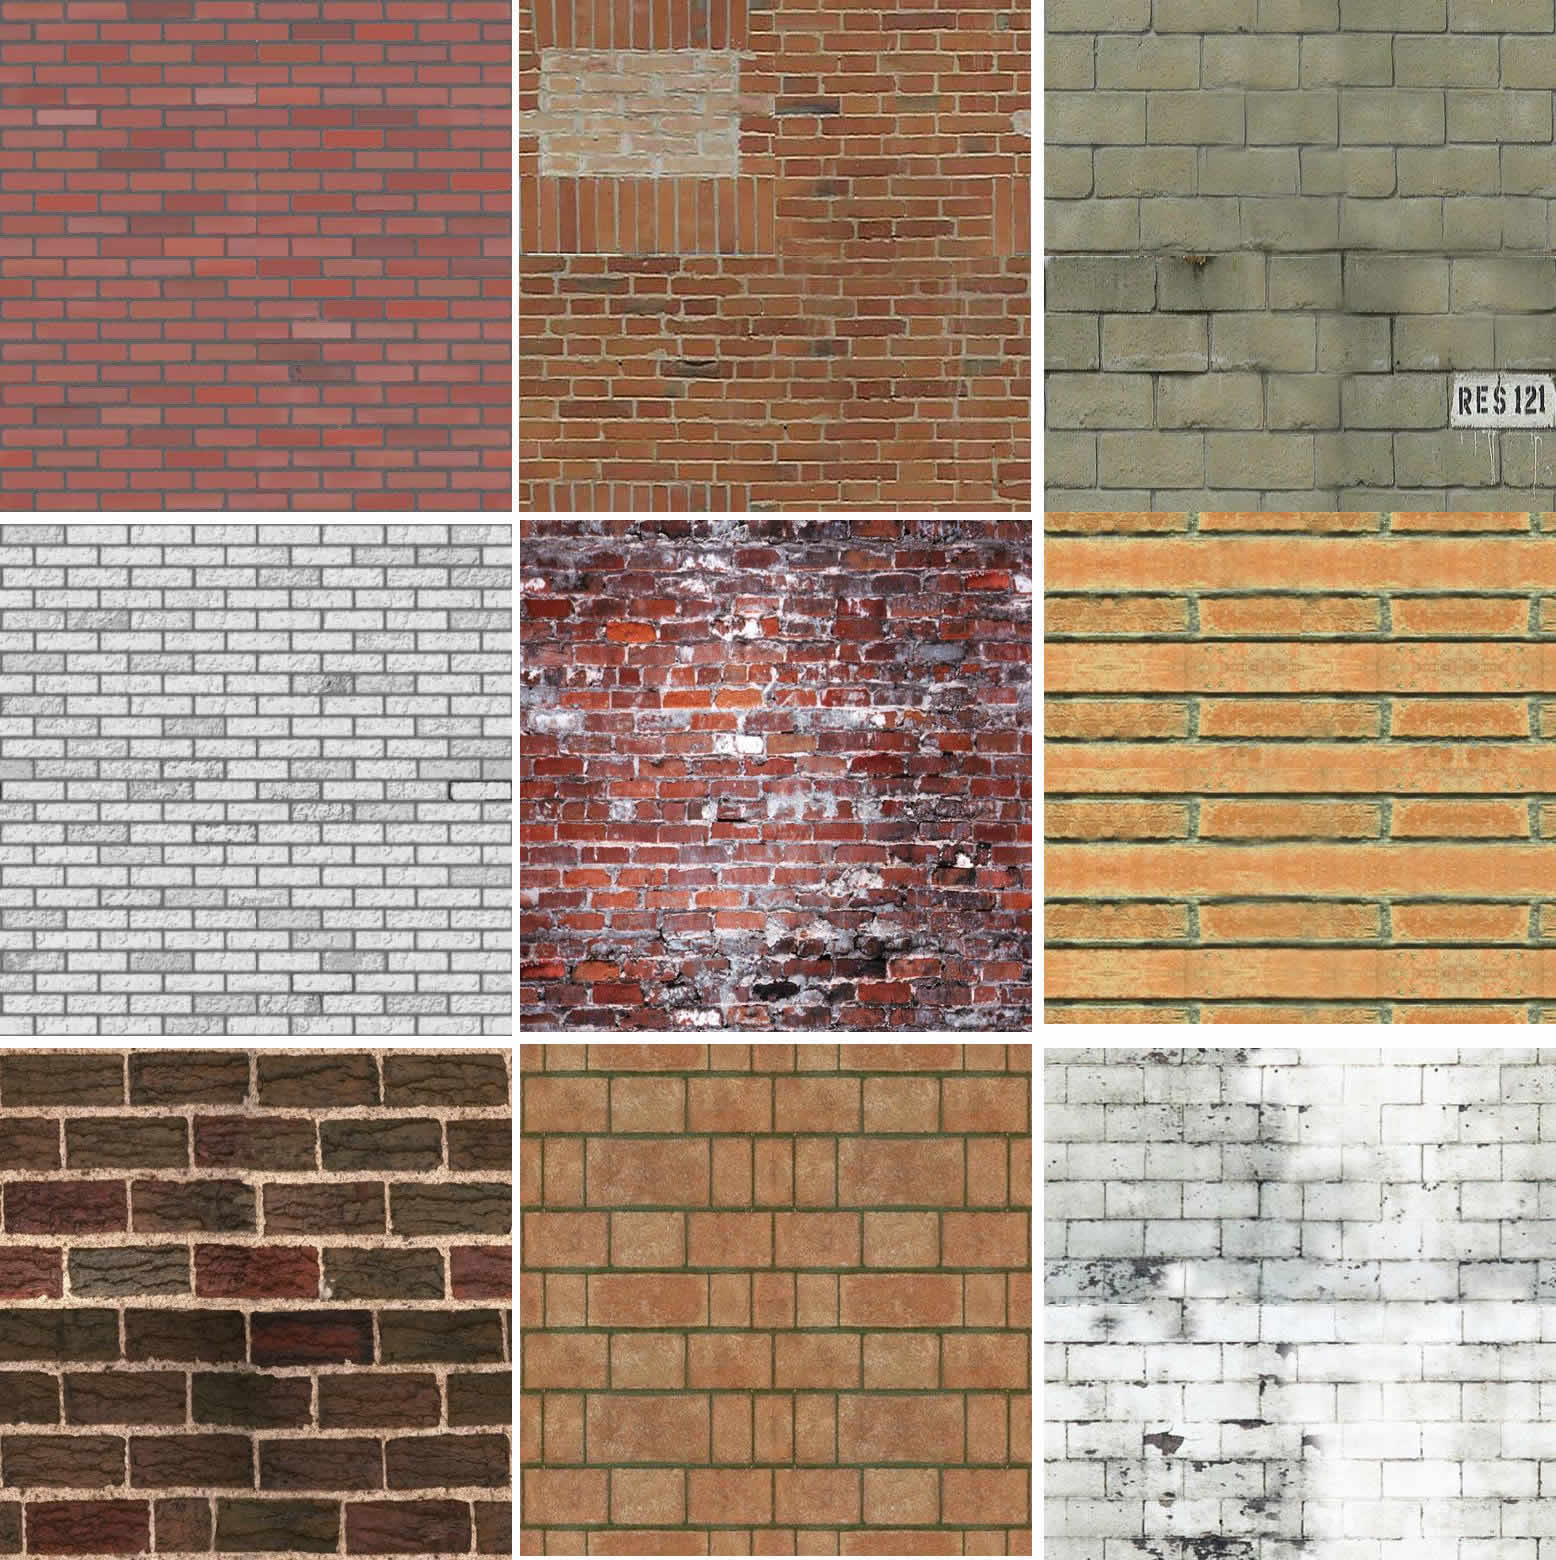 bricks texture